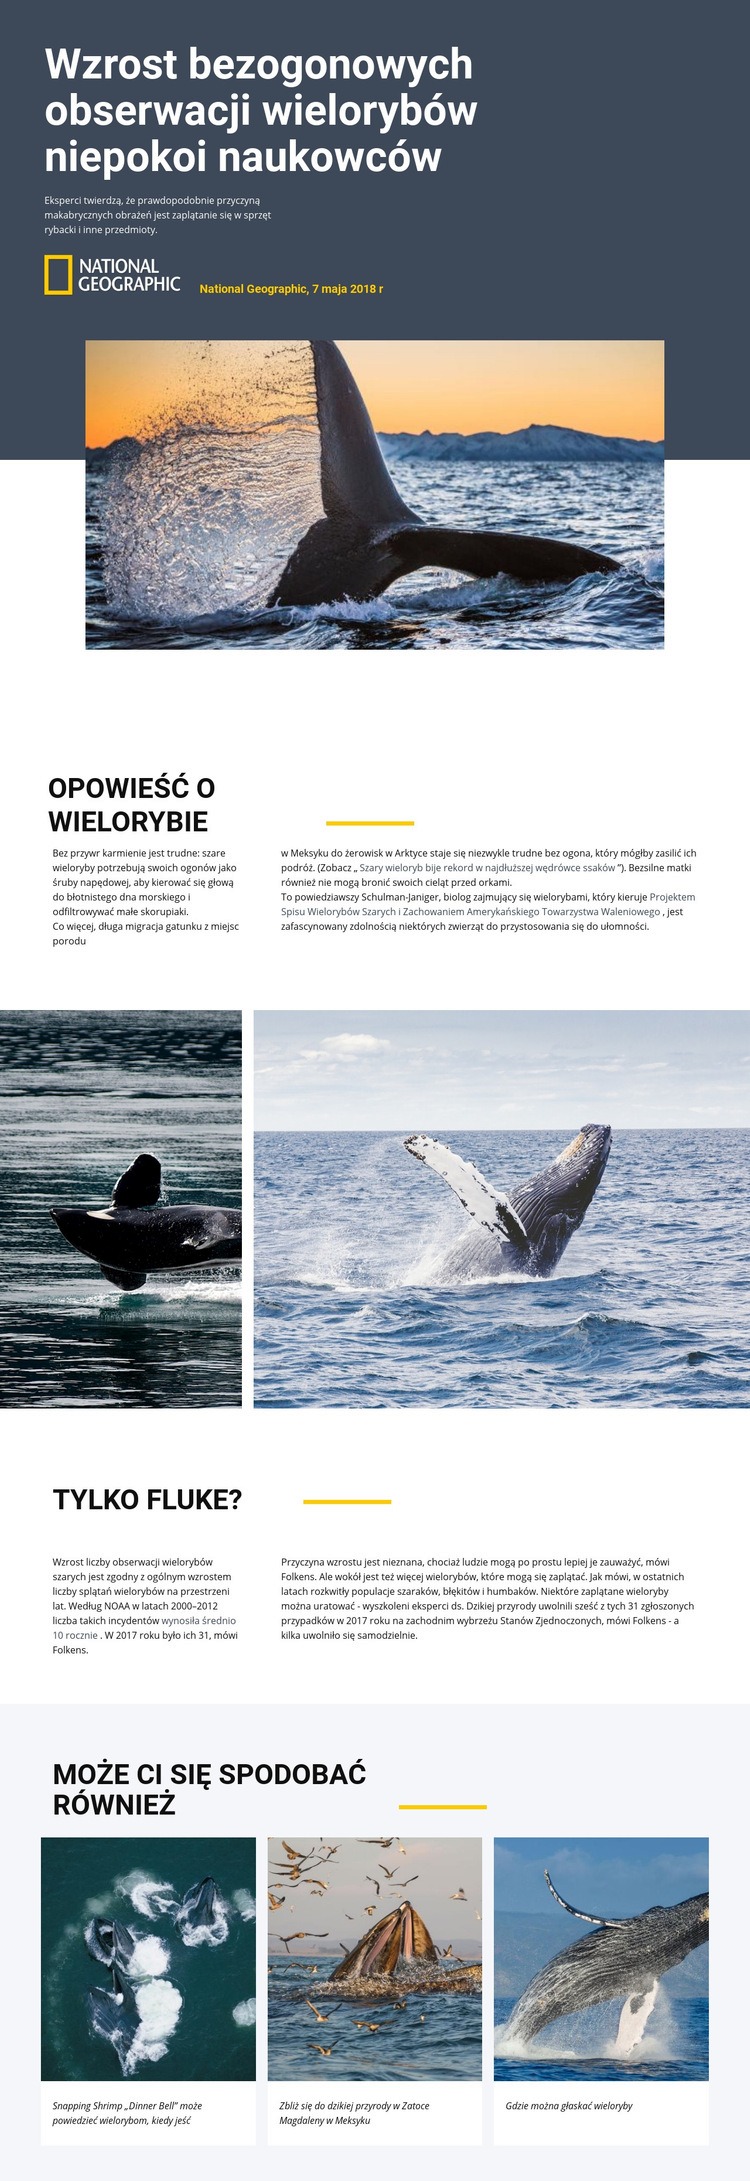 Centrum obserwacji wielorybów Szablon